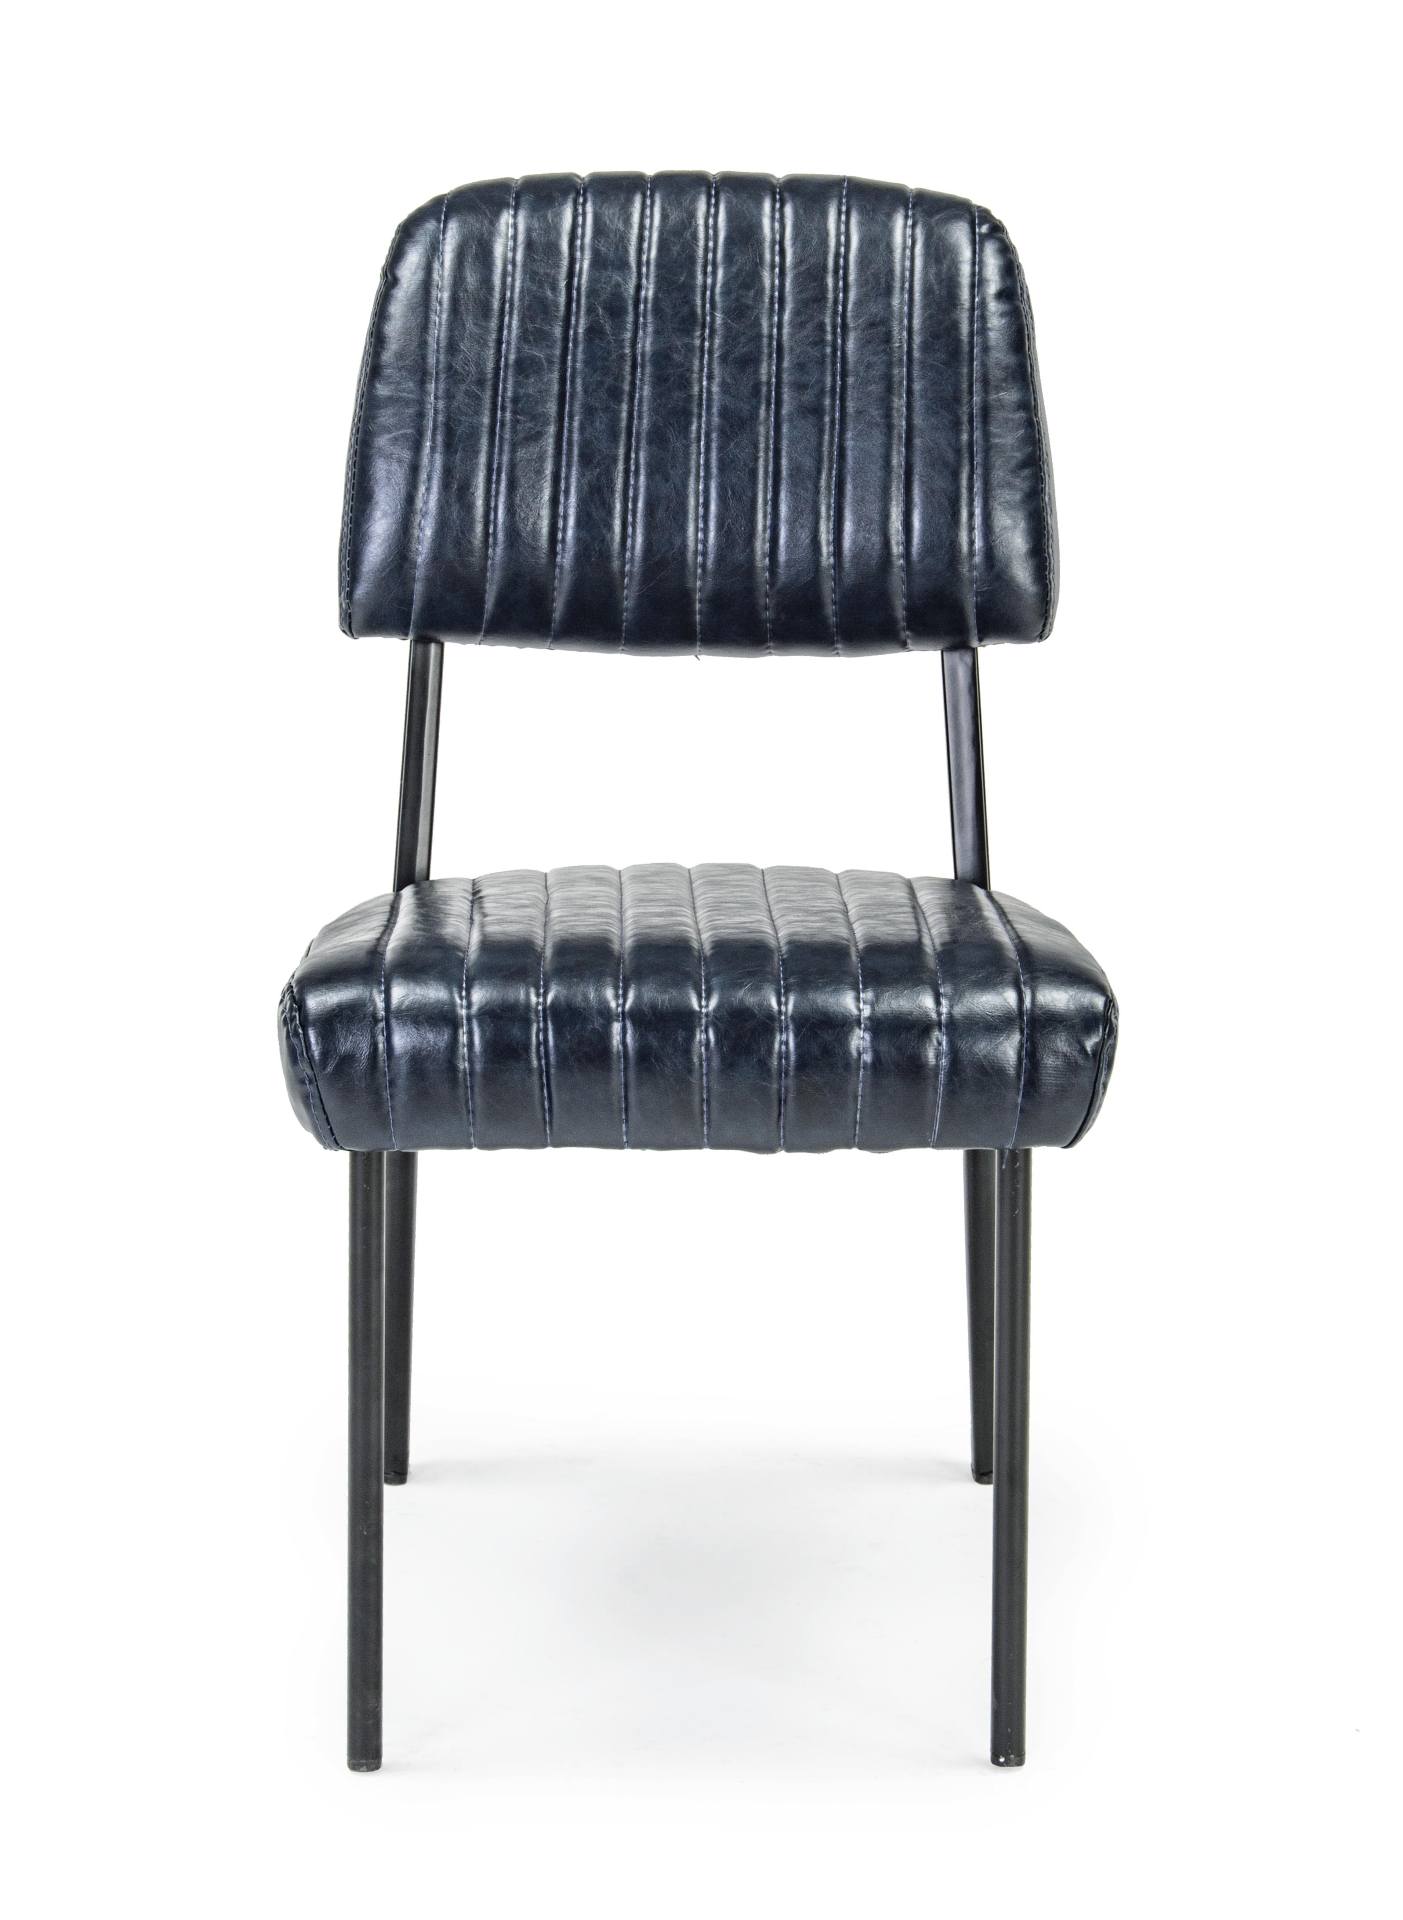 Der Stuhl Nelly überzeugt mit seinem industriellen Design. Gefertigt wurde der Stuhl aus Kunstleder, welches einen blauen Farbton besitzt. Das Gestell ist aus Stahl und ist schwarz. Die Sitzhöhe beträgt 45 cm.